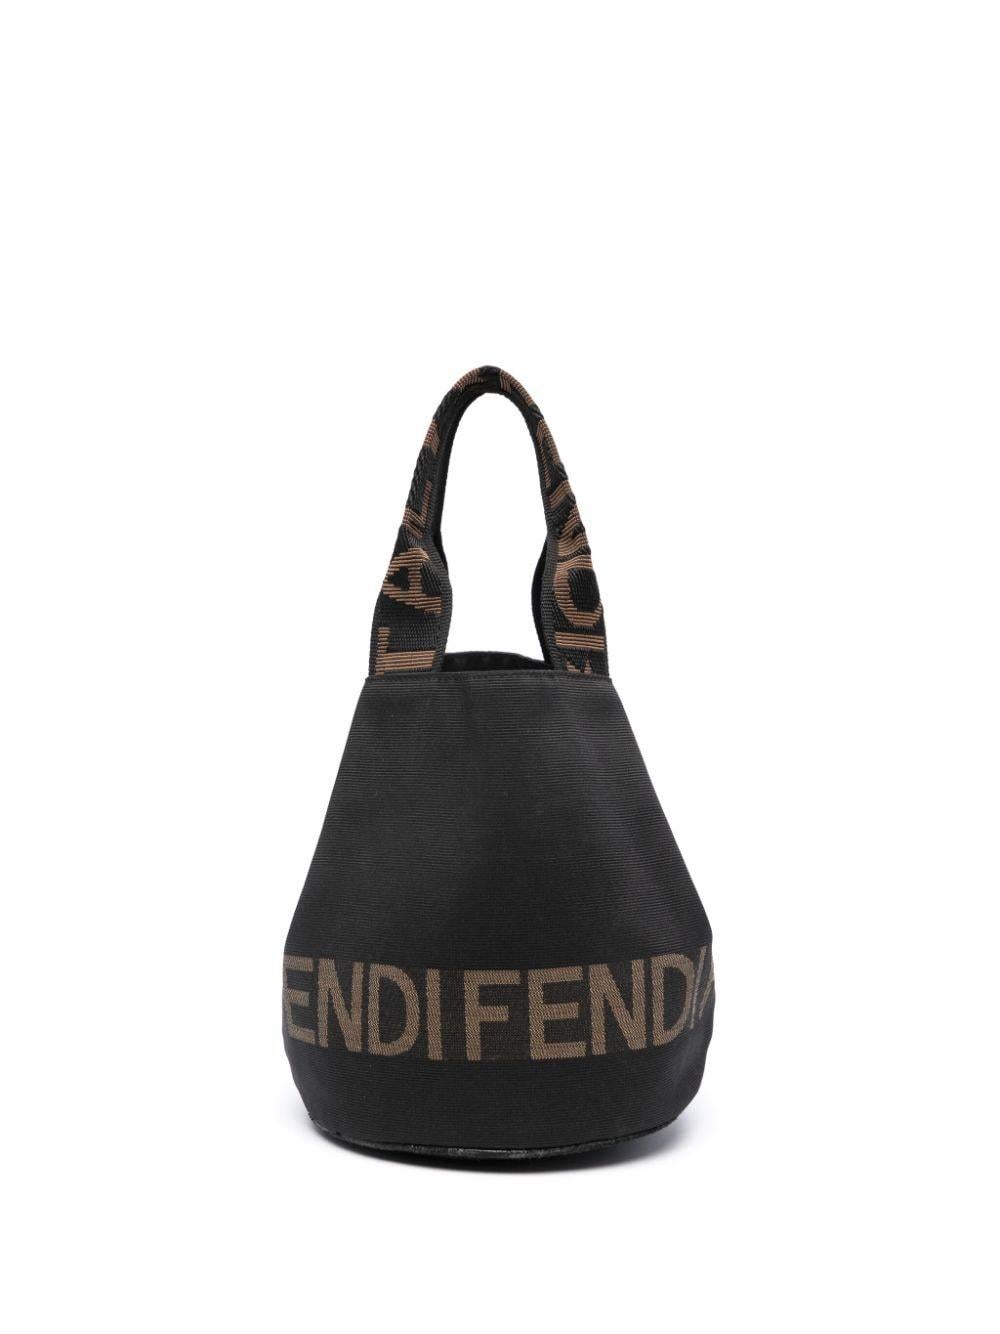 Fendi Black Ottoman Bucket Handbag For Sale 2